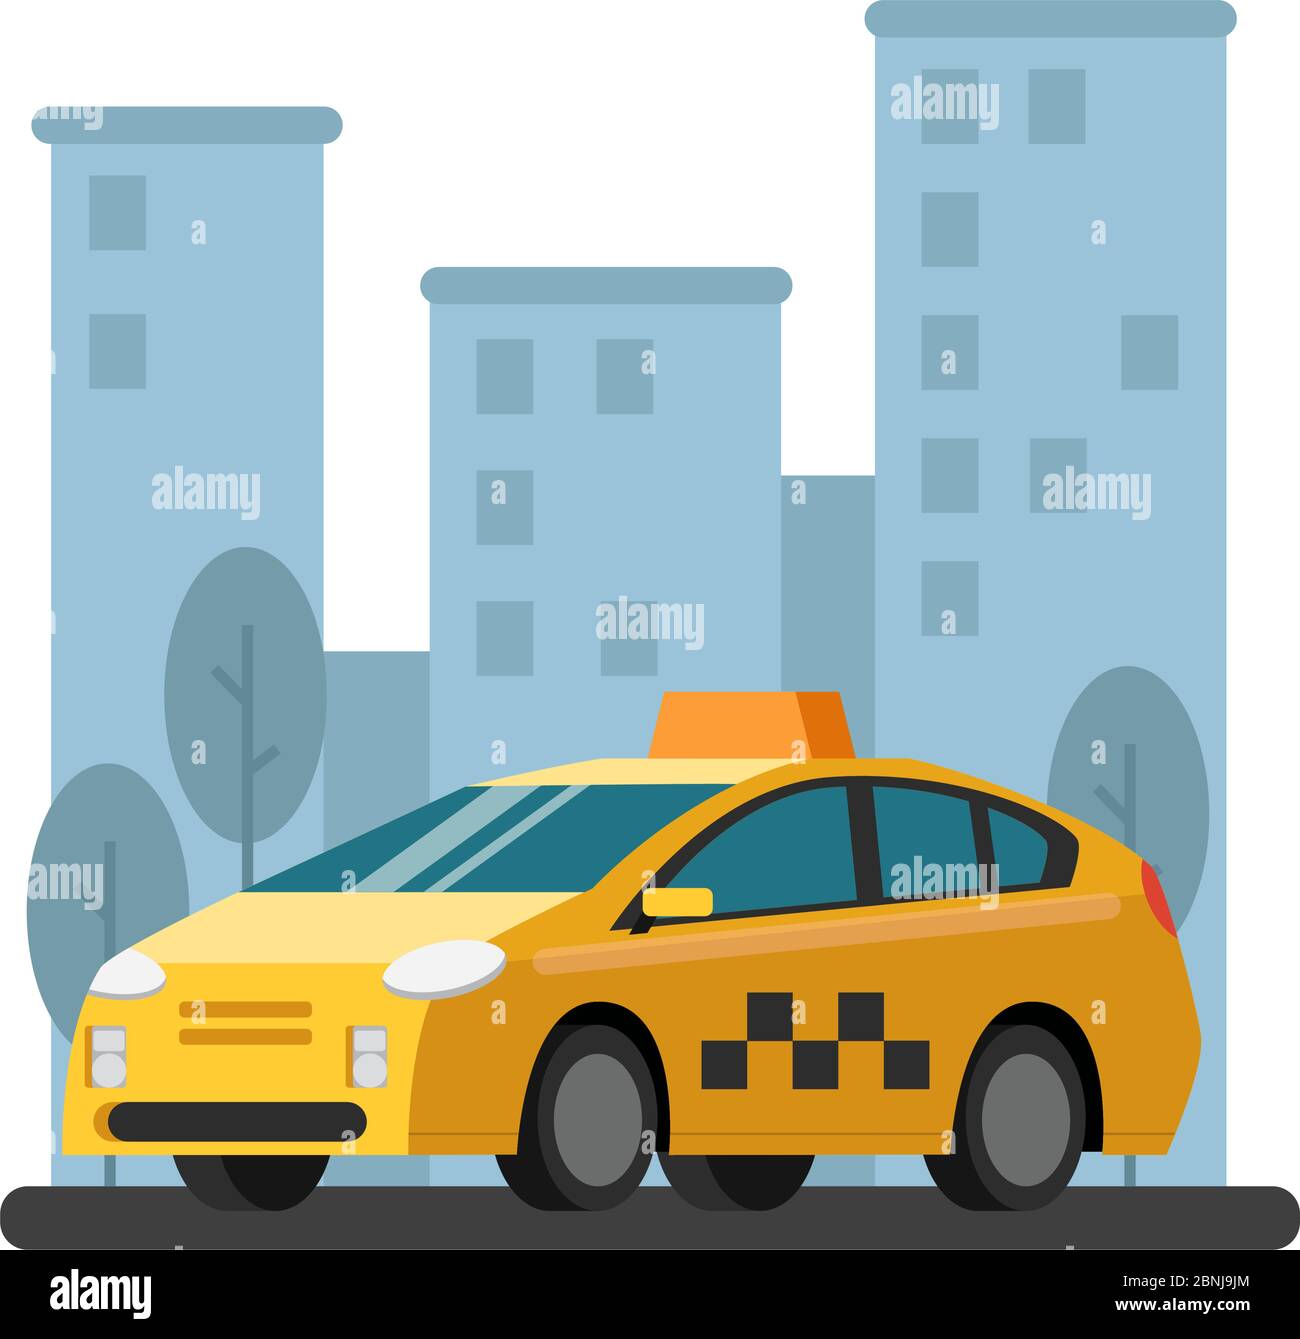 Illustrationen von Taxi-Wagen. Vektorbild im flachen Stil Stock Vektor